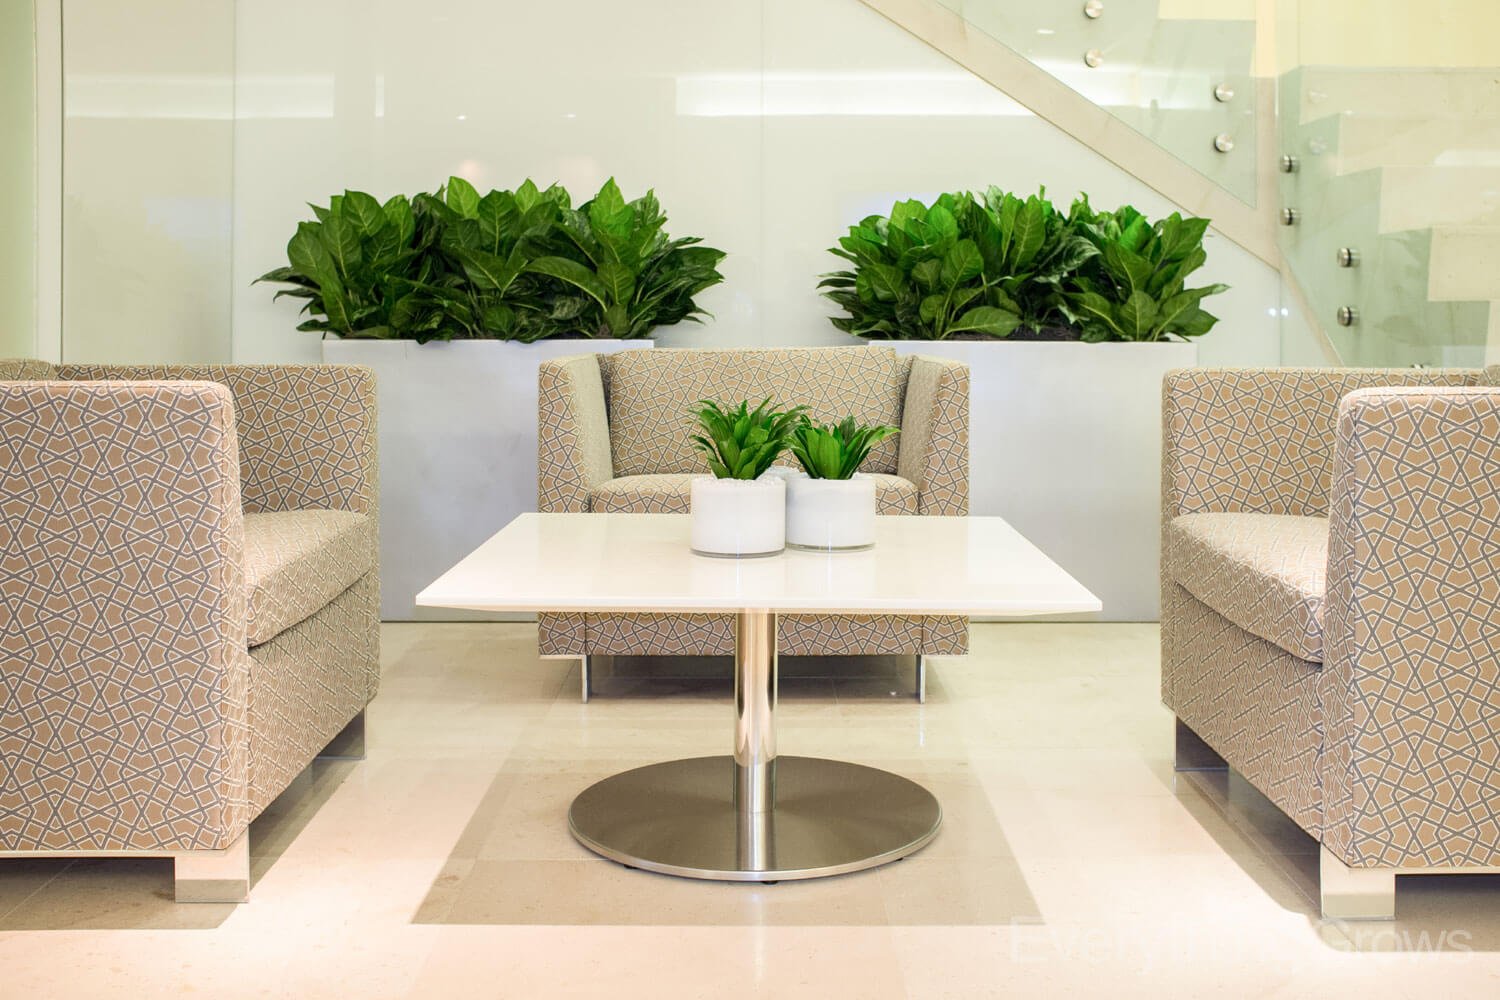 Office Interior Plant Design